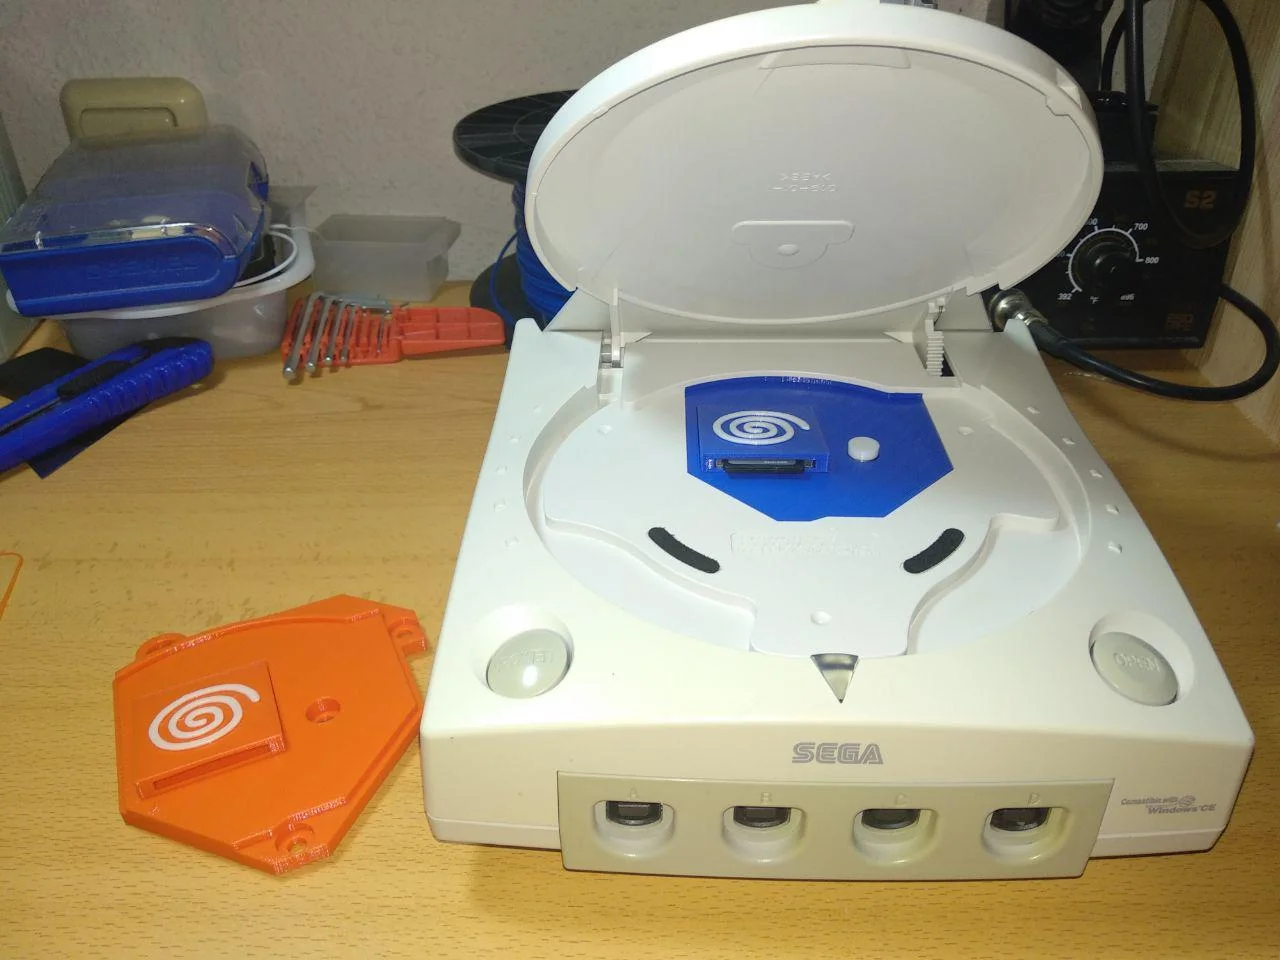 Carcasa para GDEMU de Dreamcast con lector SD integrado y soporte / GDEMU Dreamcast tray with integrated SD Reader and support